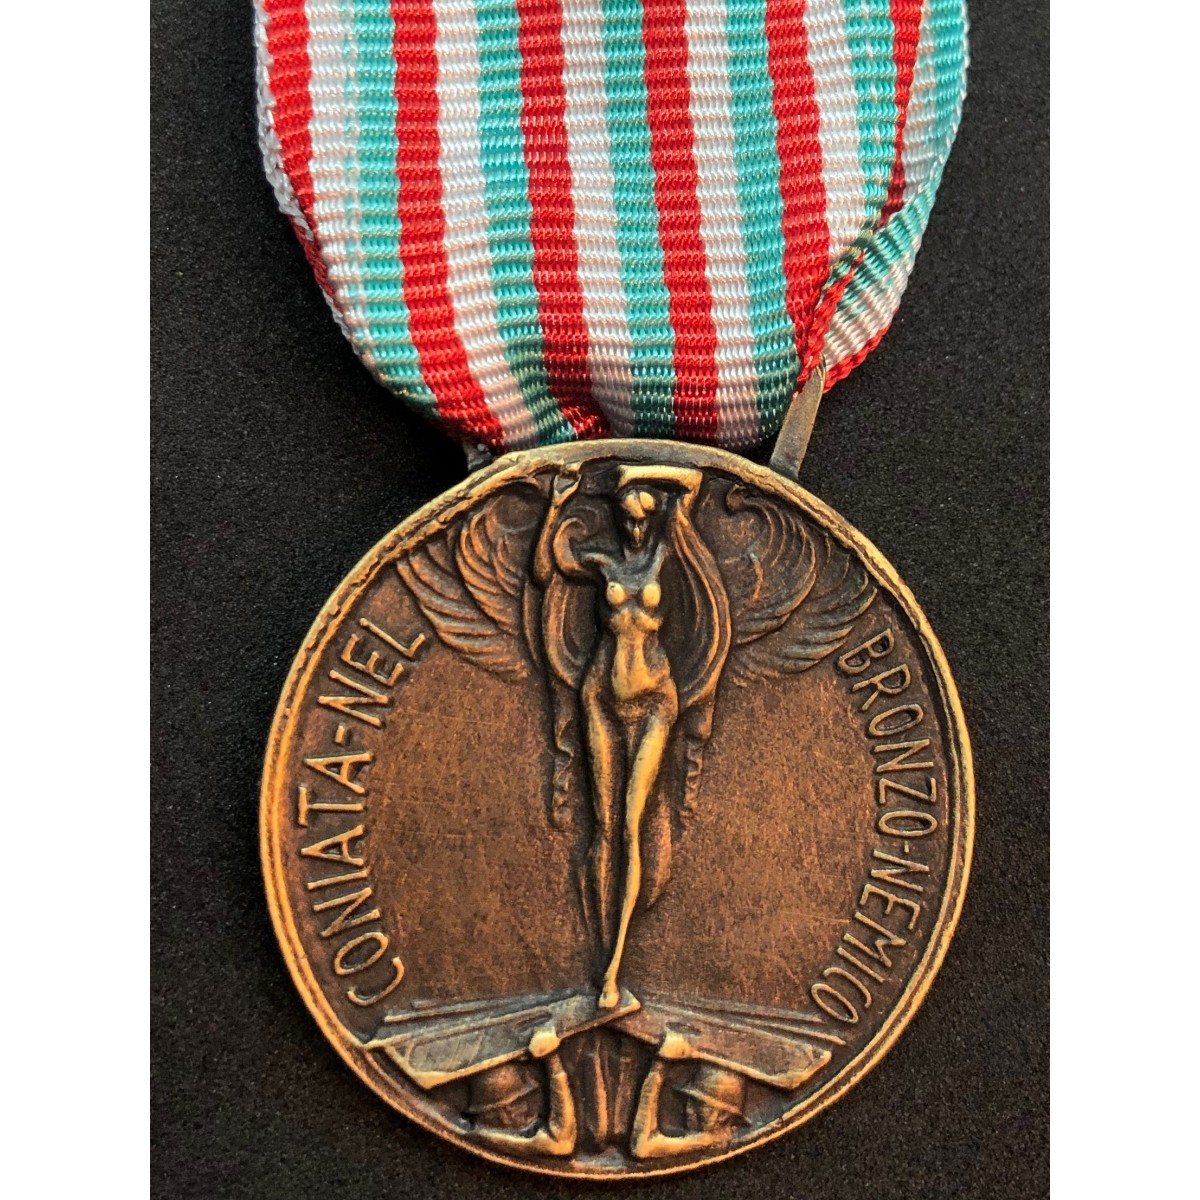 Nastro nastrino originale d'epoca medaglia volontari di guerra 1915 1918 